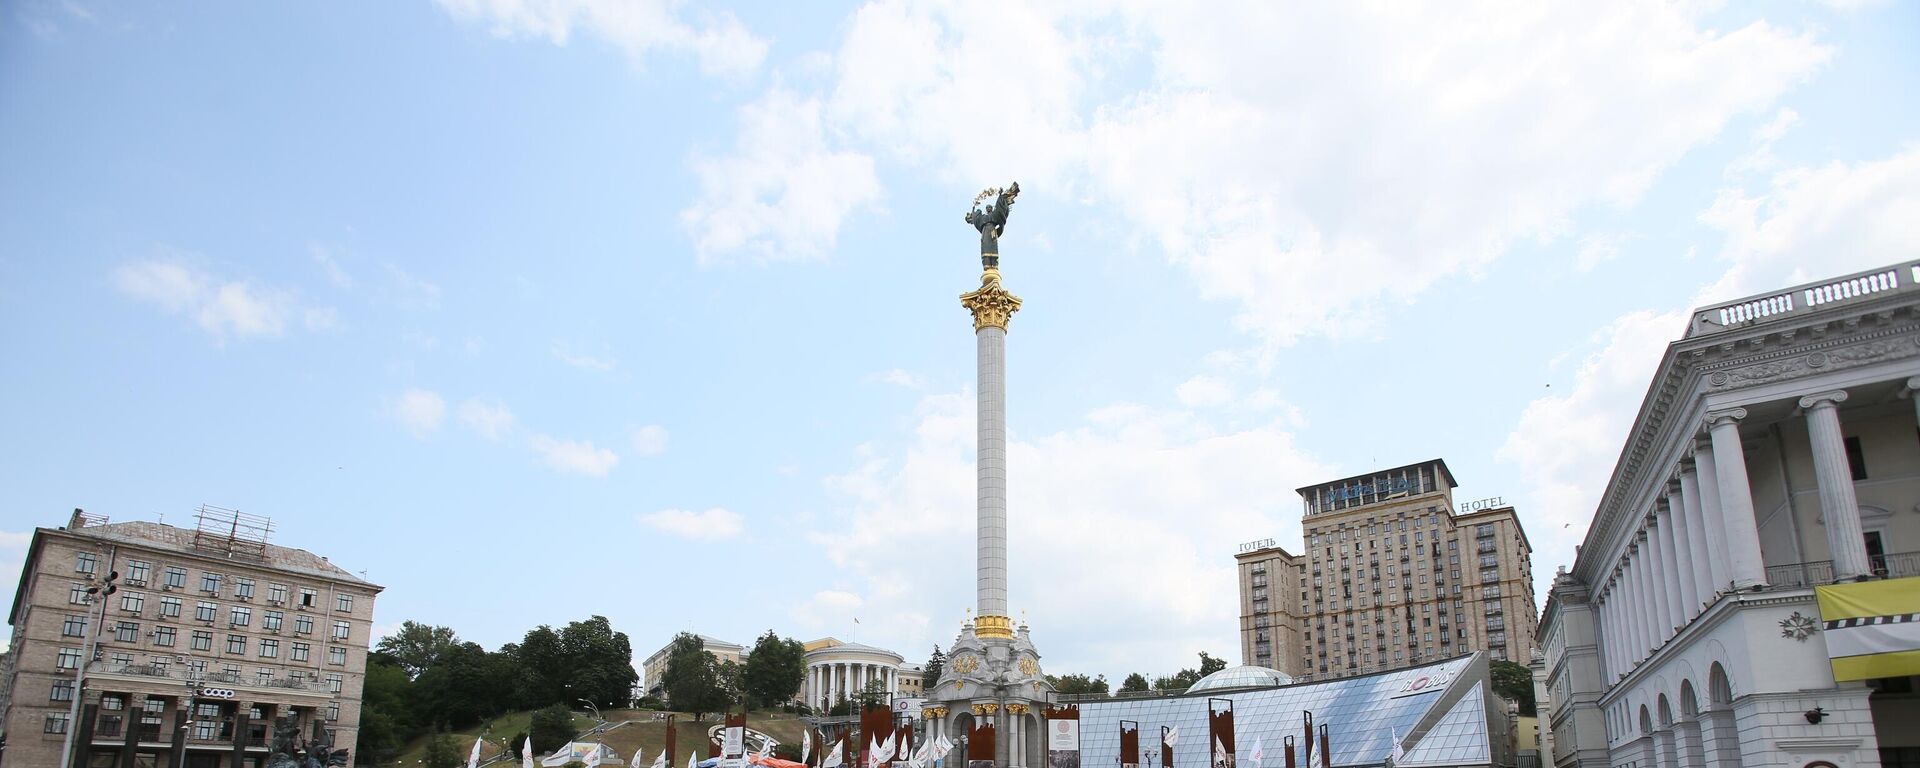 Площадь Независимости в Киеве.  - Sputnik Молдова, 1920, 20.08.2021